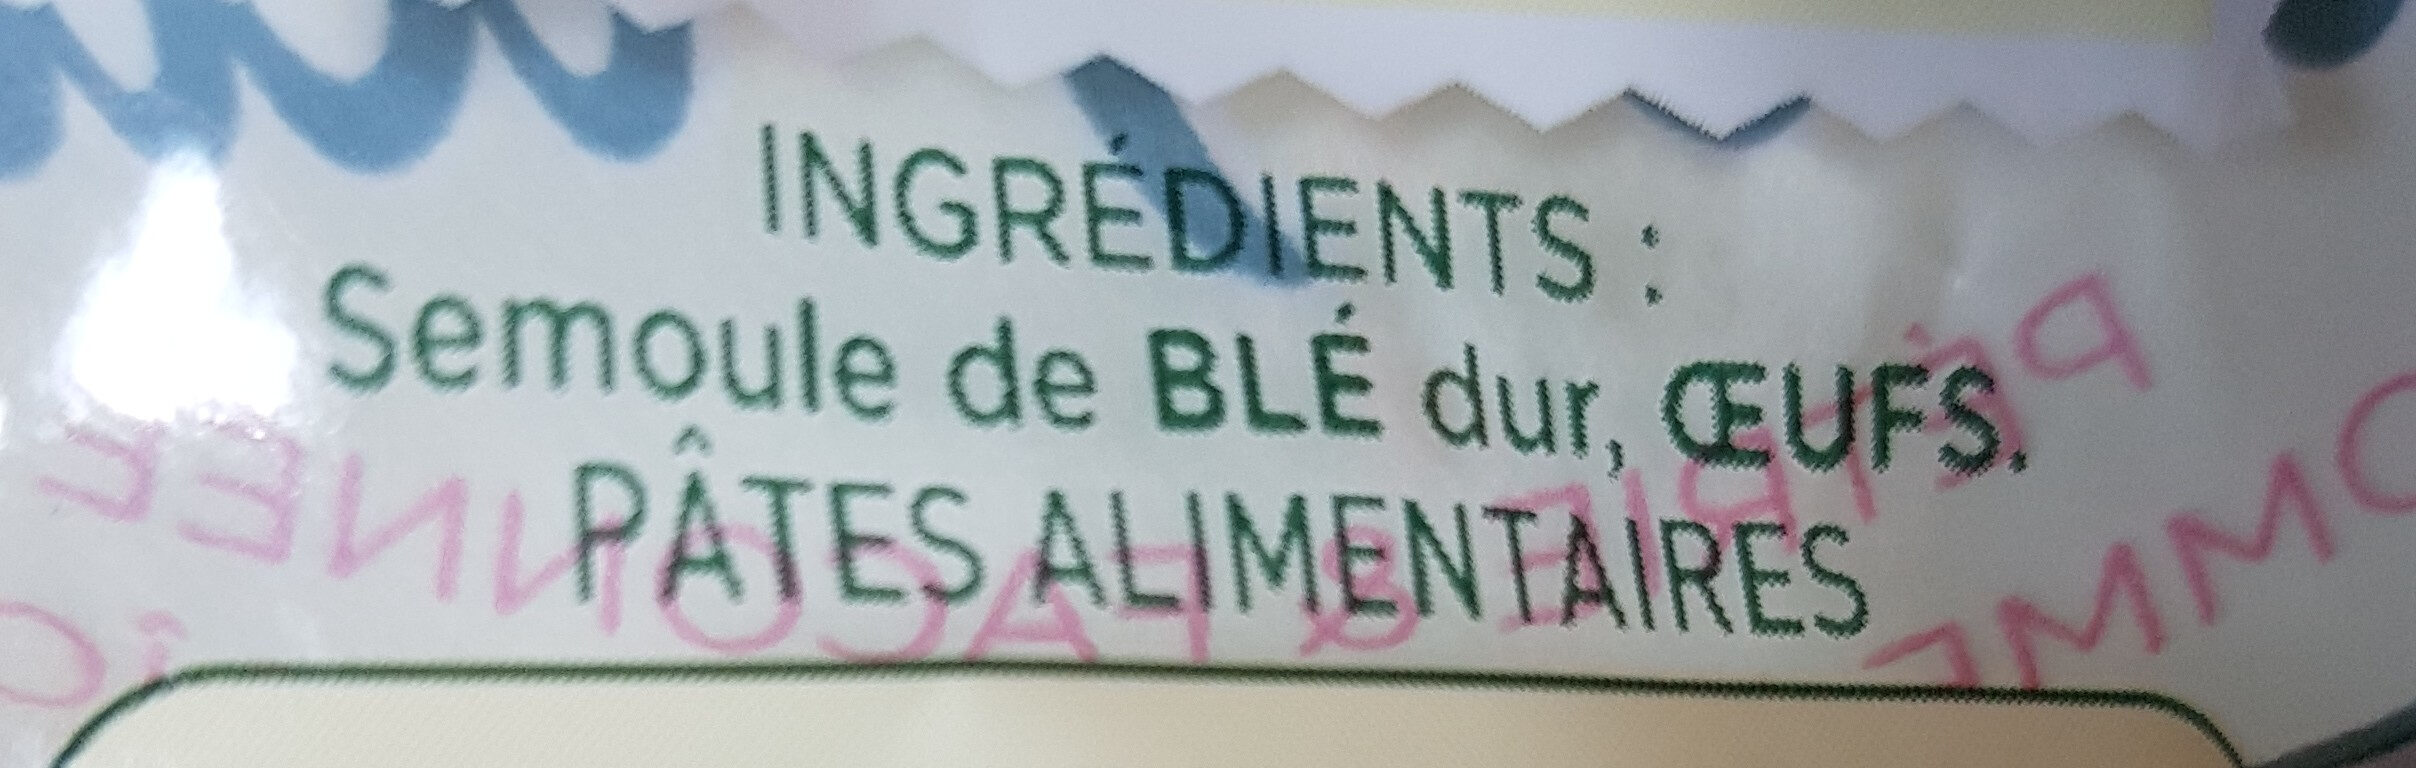 Collerettes - Ingredients - fr